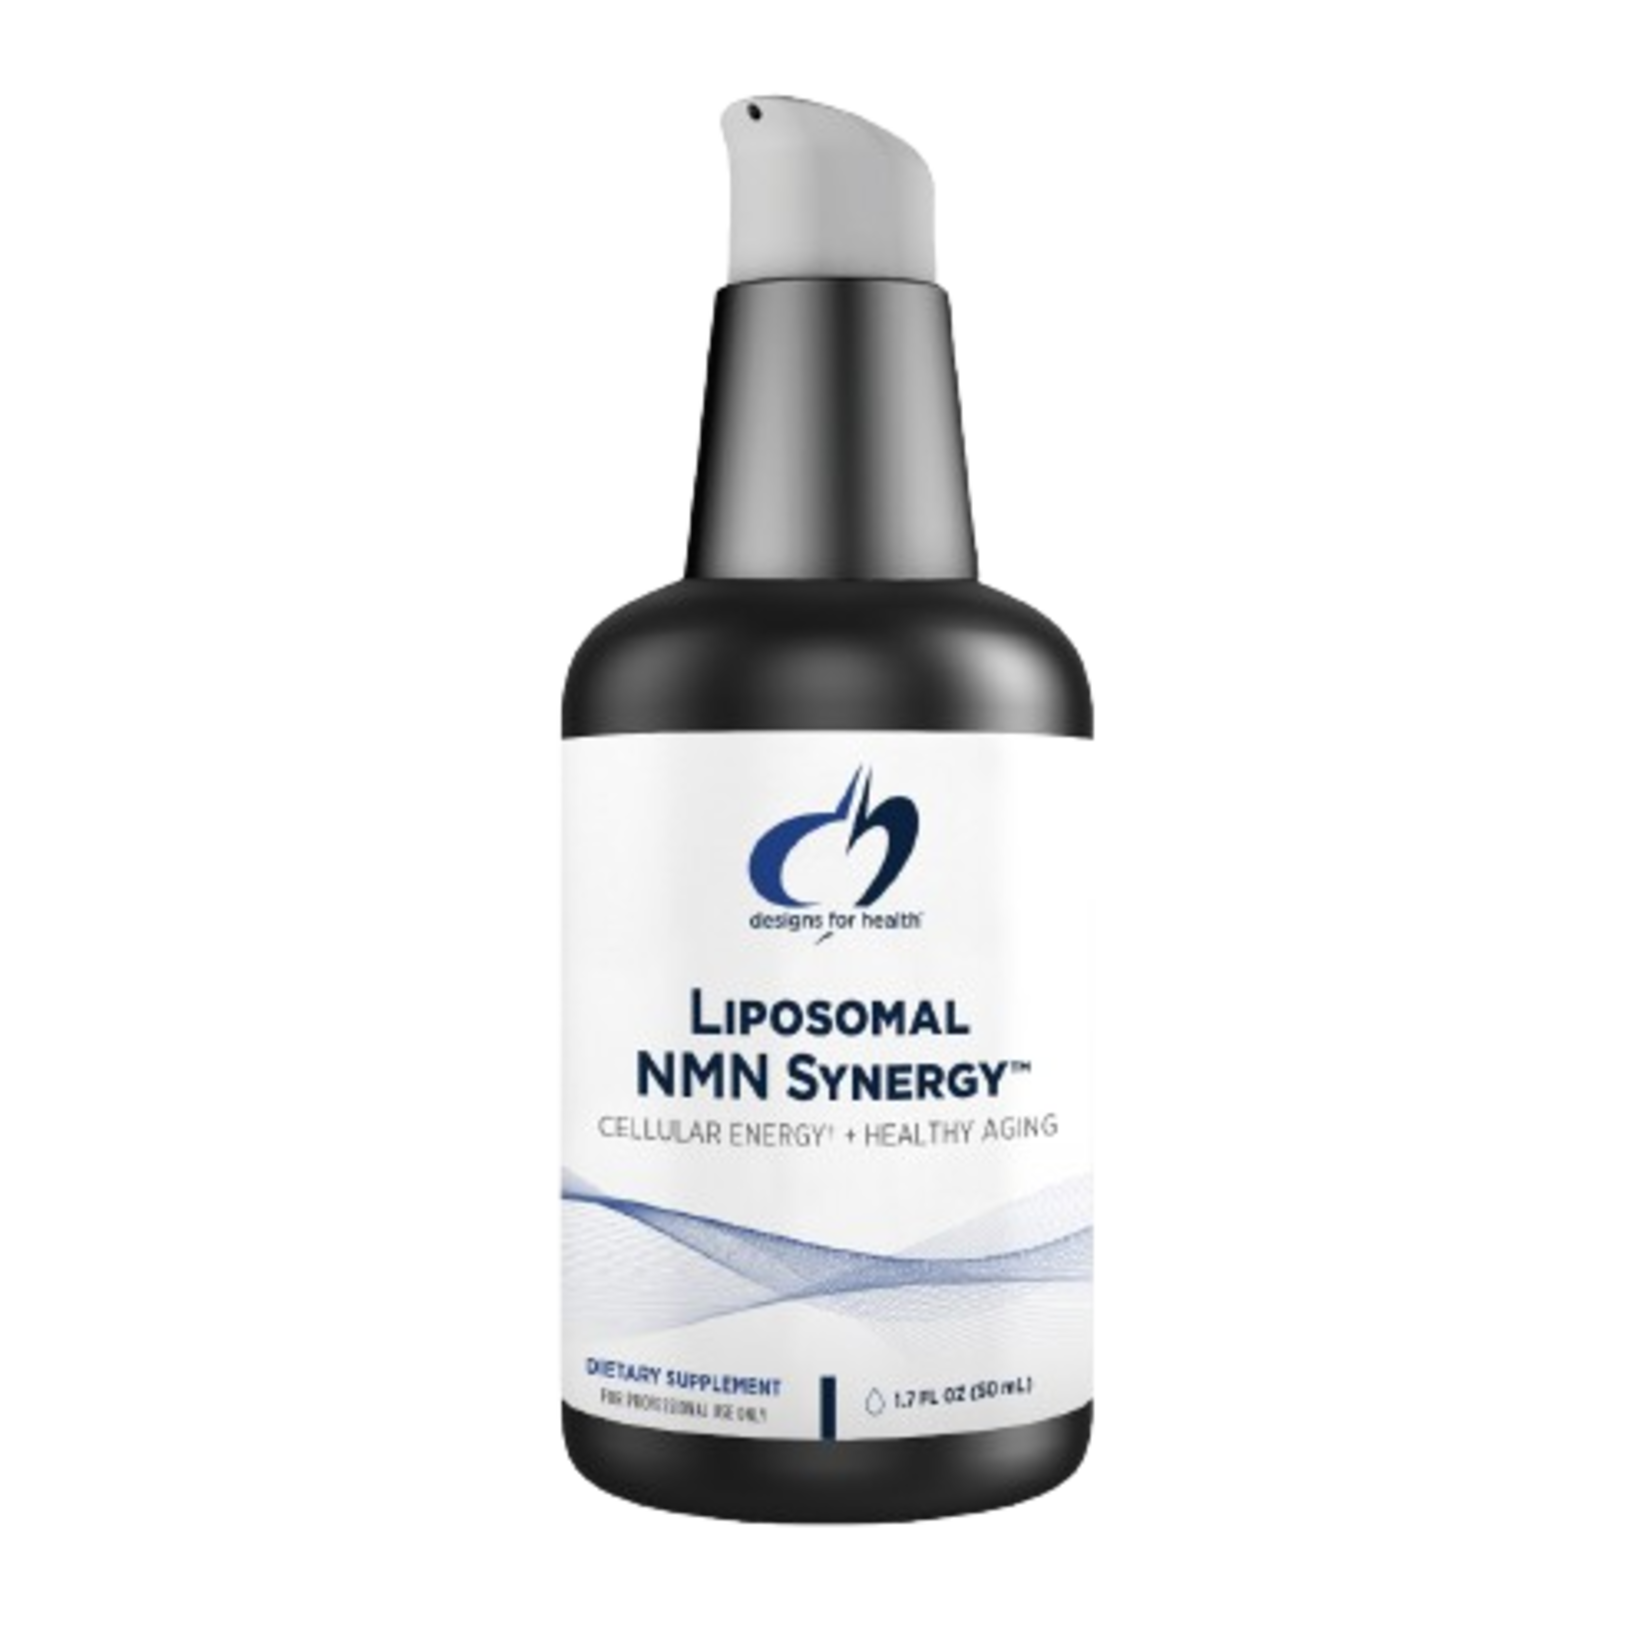 Liposomal NMN Synergy  (Designs for health)